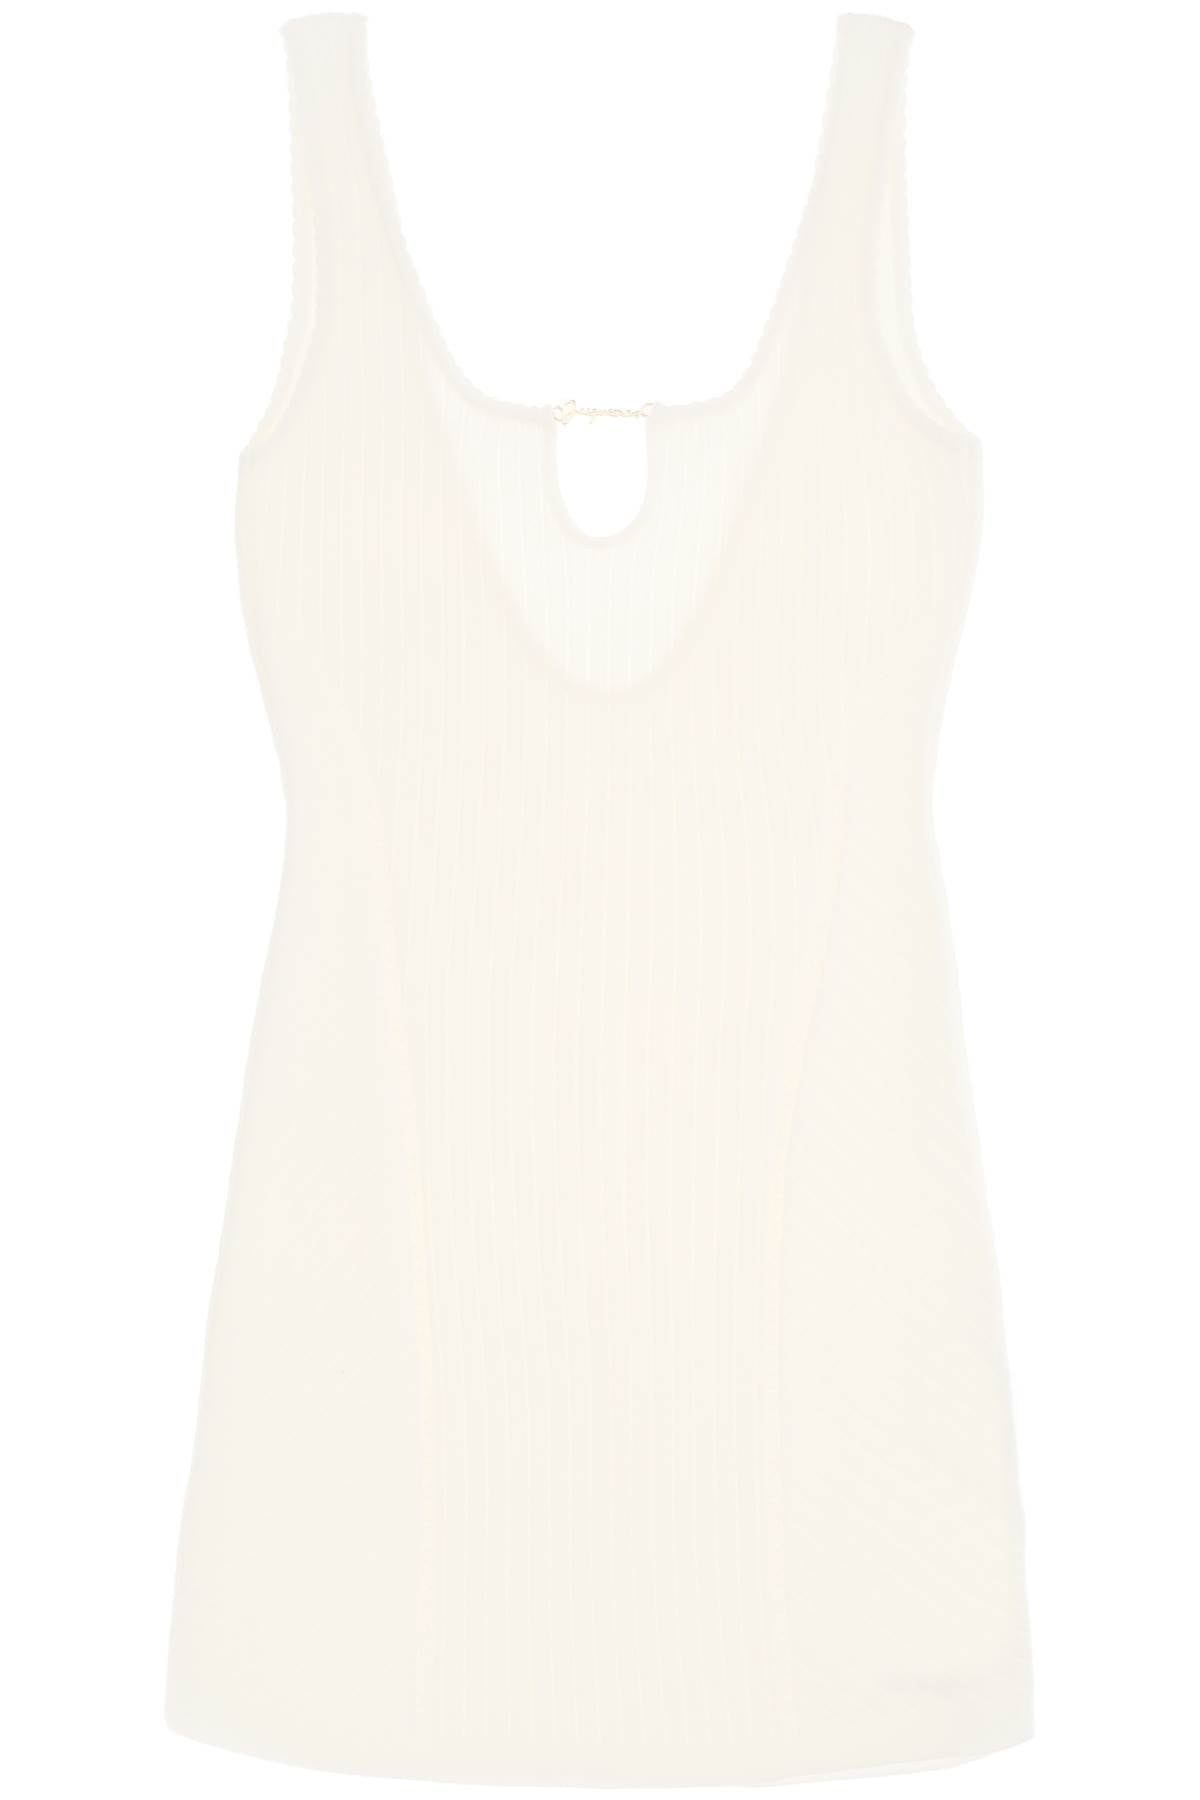 JACQUEMUS Elegant White Mini Dress for Women - Scalloped Neckline and Open Back